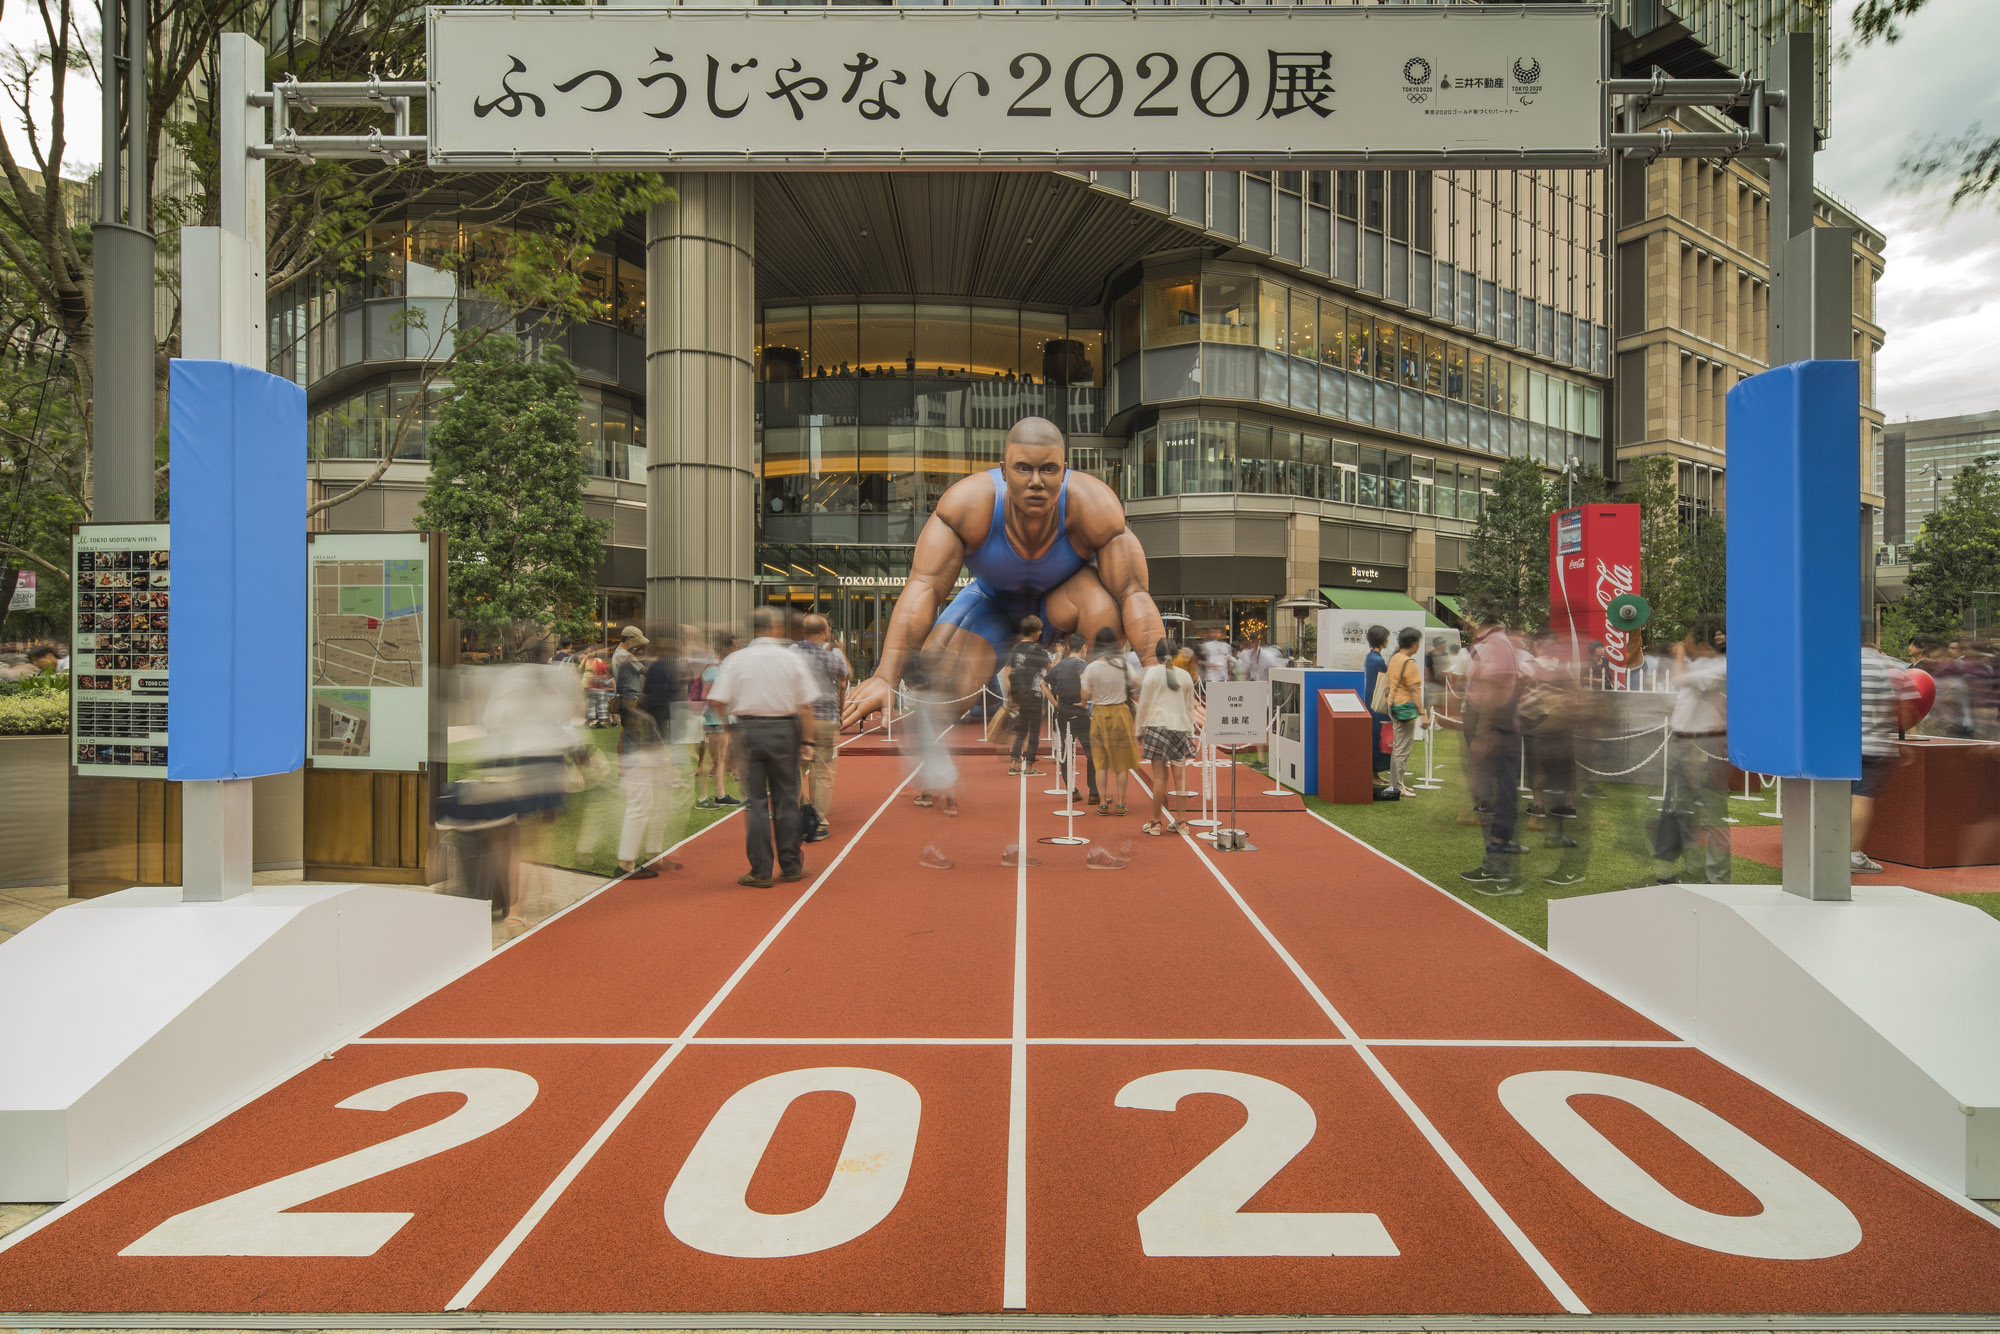 Ein Event im Hinblick auf die Sommerspiele 2020 in Tokyo-Midtown-Hibiya-Komplex im Sommer 2018.